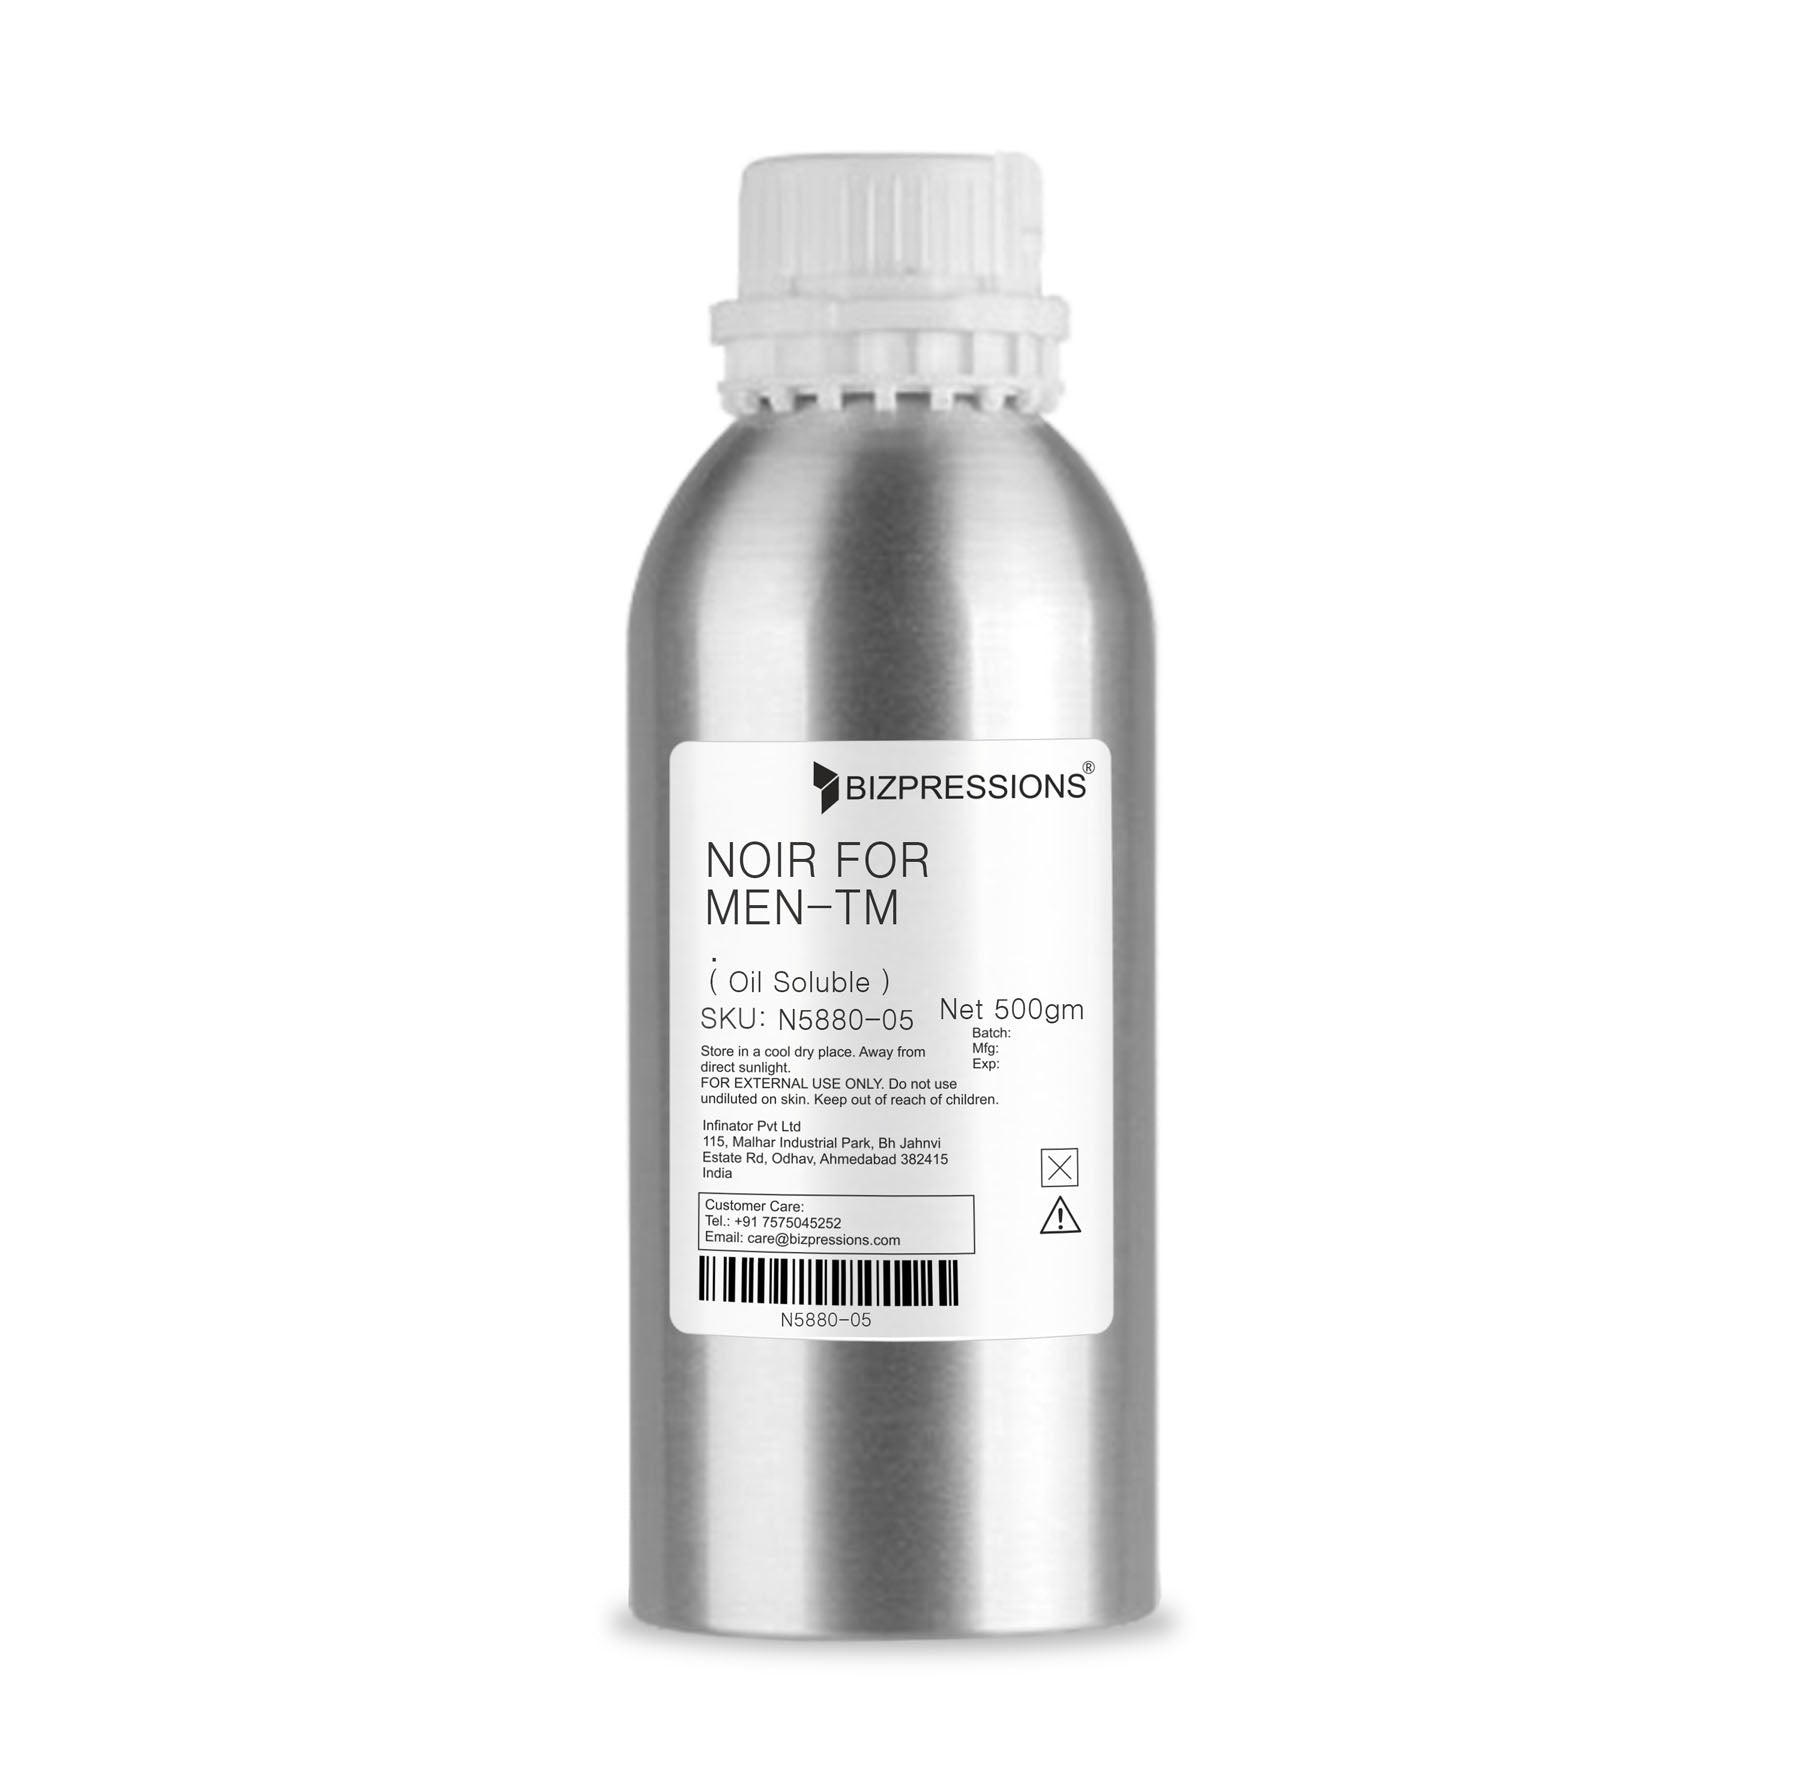 NOIR FOR MEN-TM - Fragrance ( Oil Soluble ) - 500 gm